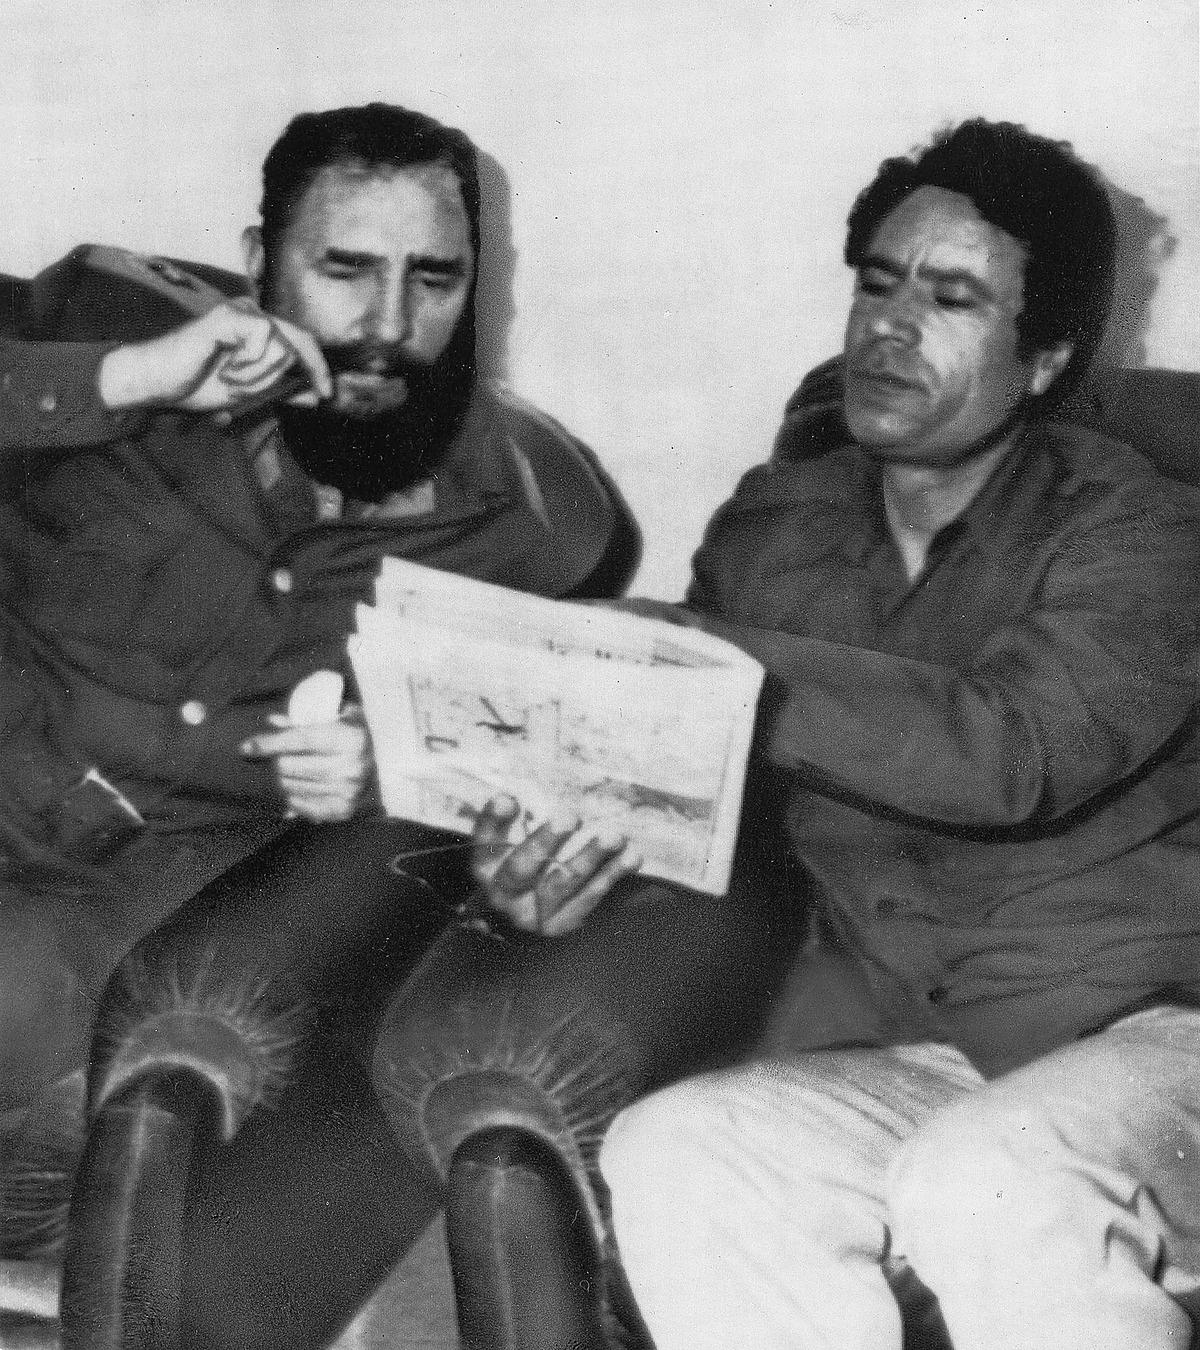 Kubas ledare Fidel Castro och Gaddafi studerar nyheterna i tidningen tillsammans.